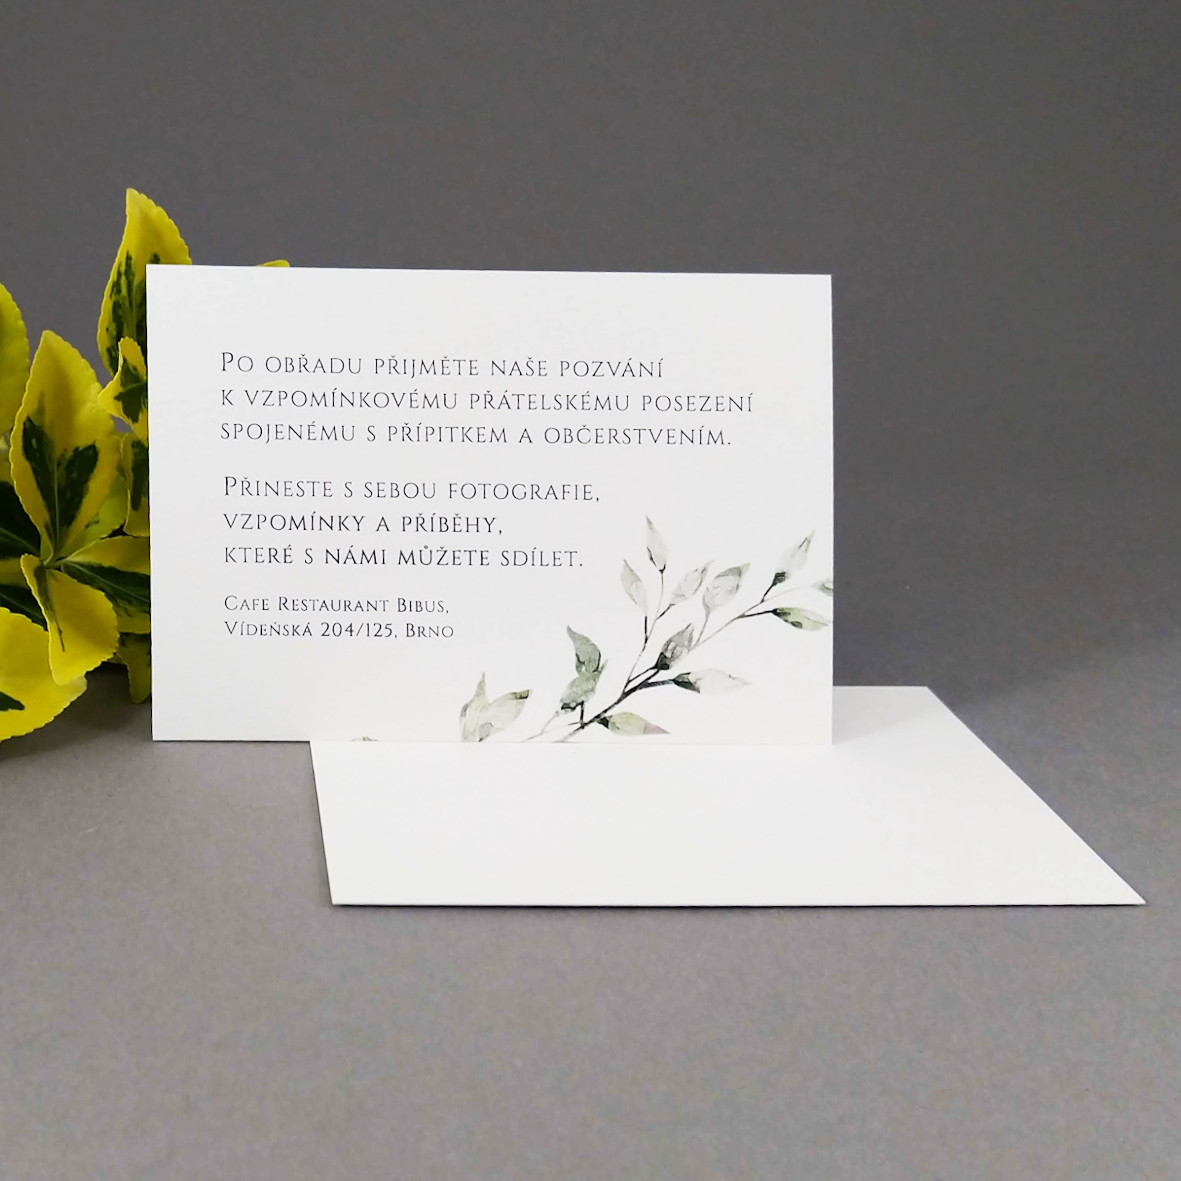 Pozvánka, informační karta – s motivem větvičky v šedozelené barvě, formát 100 × 70 mm, jednostranná